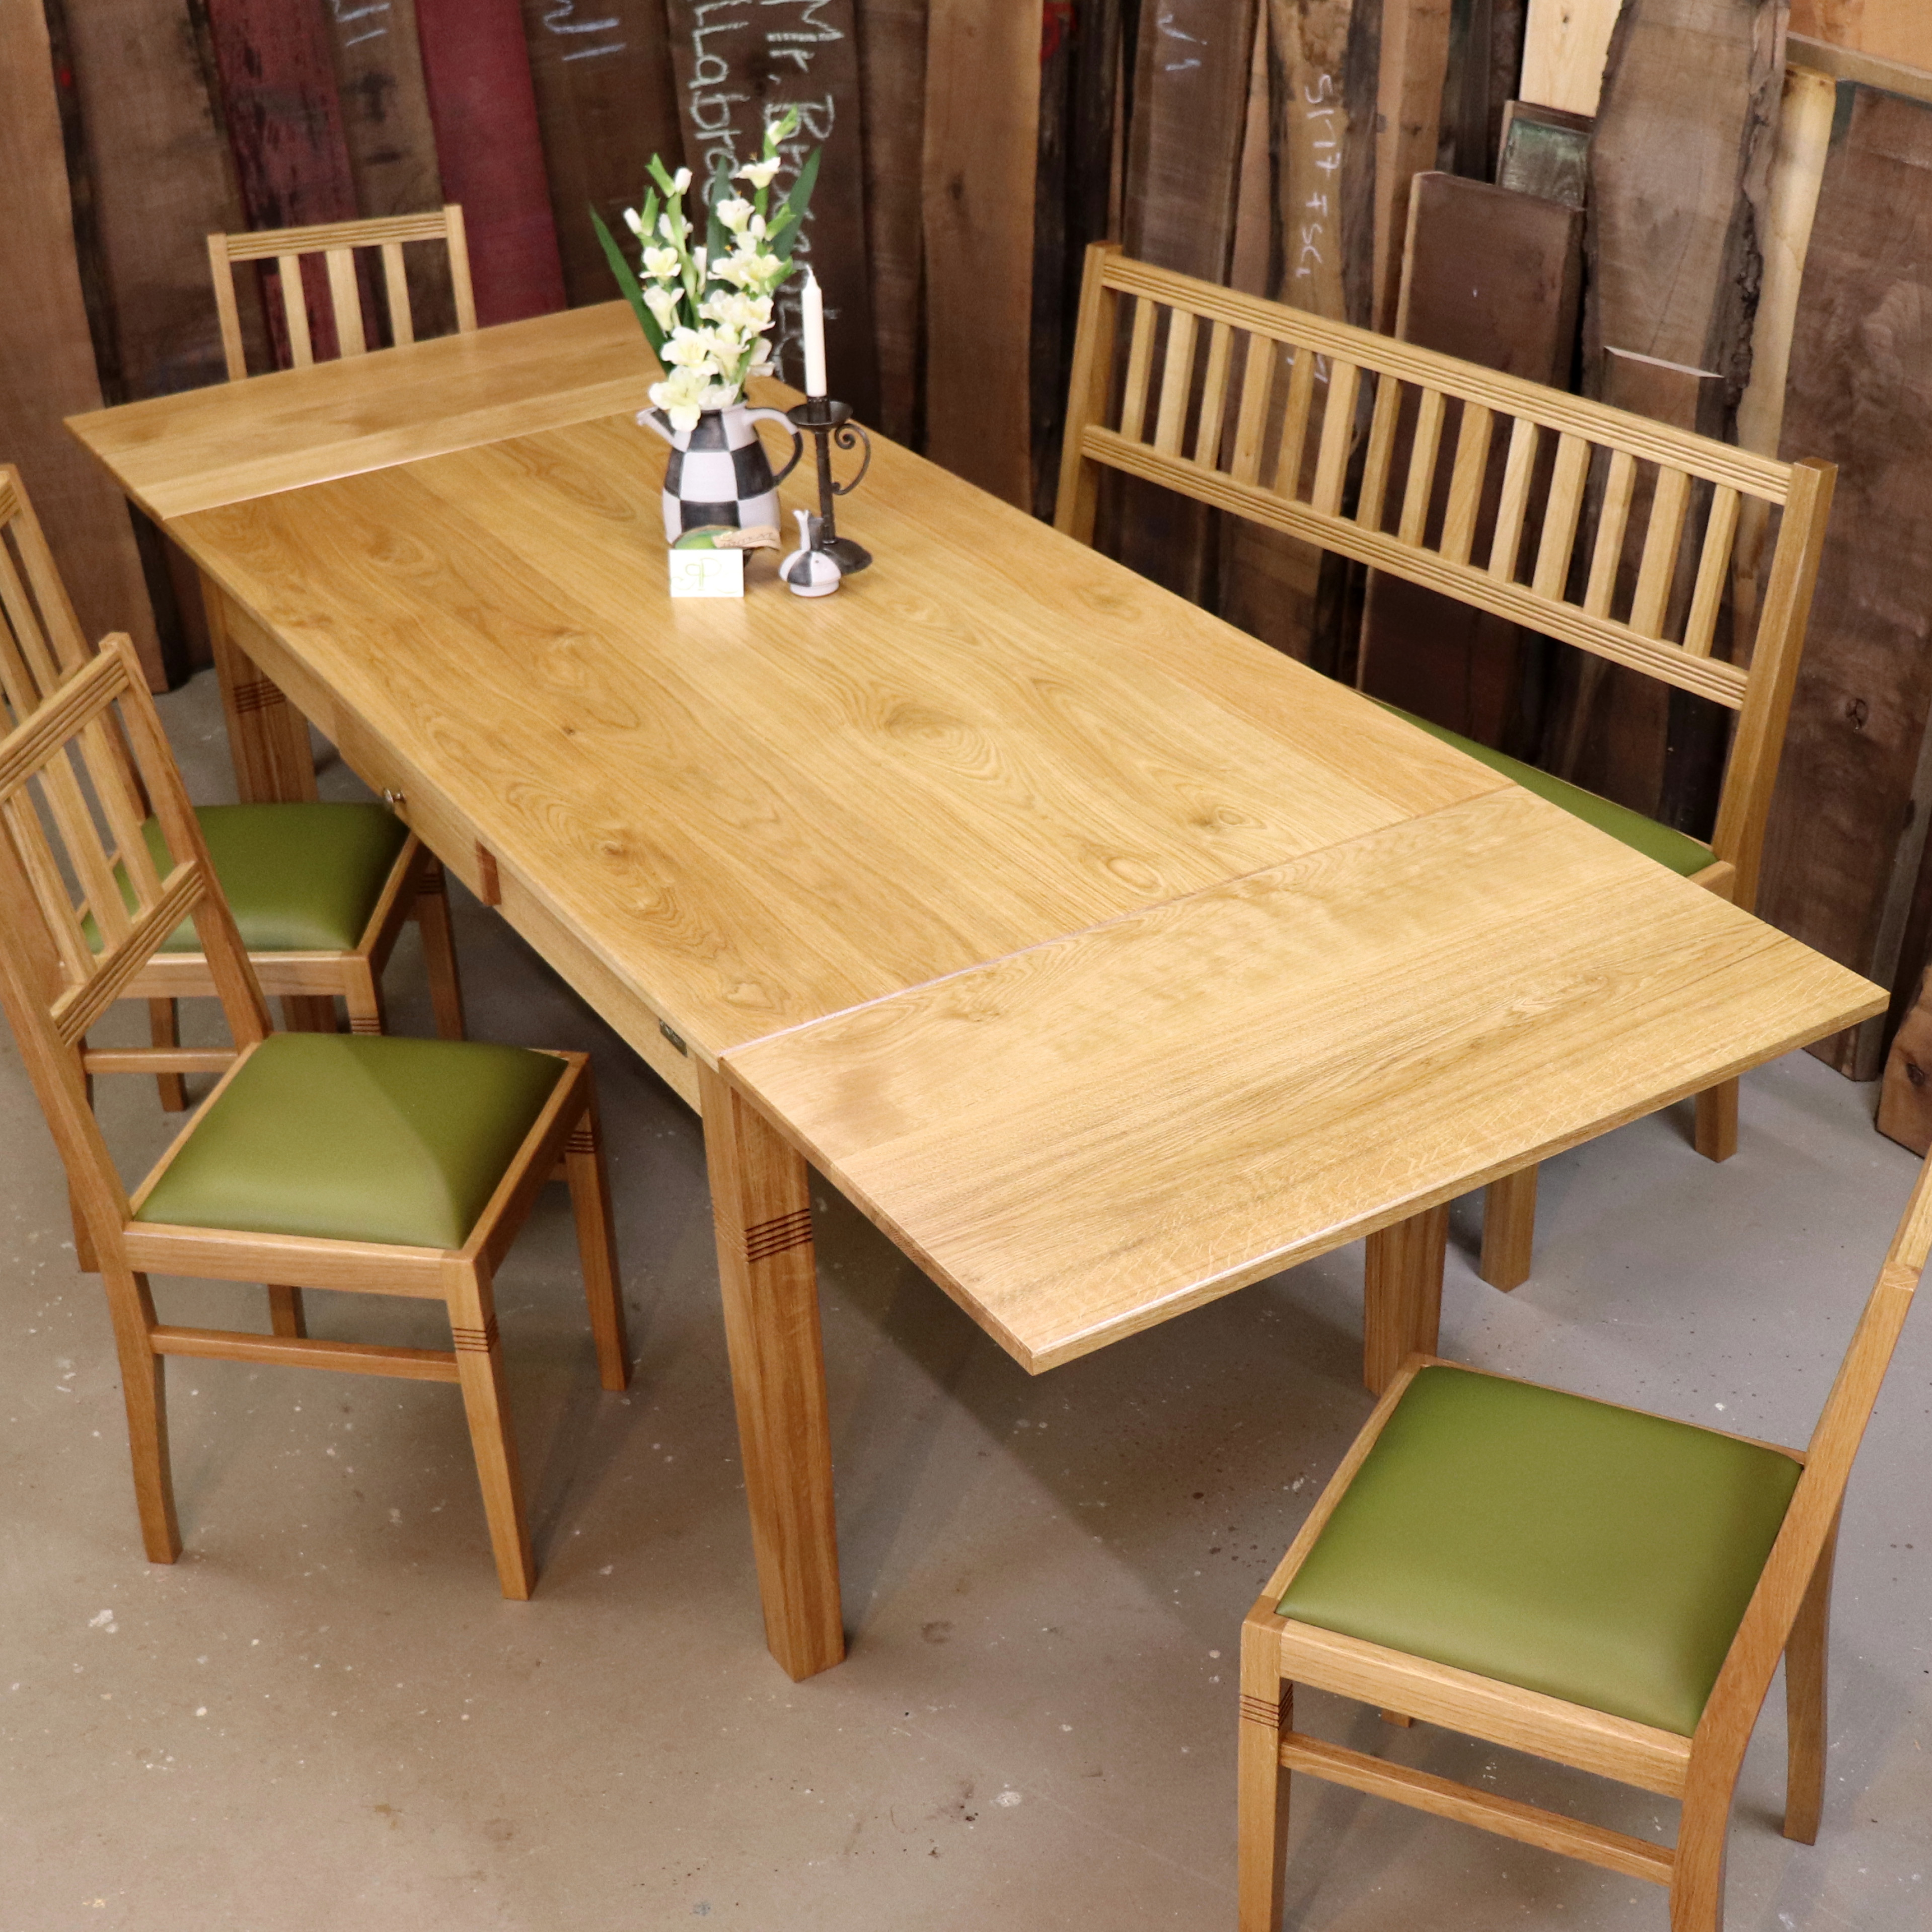 Küchentisch Eiche Holz Stühle Bank Leder grün erweiterbar Ansteckteil